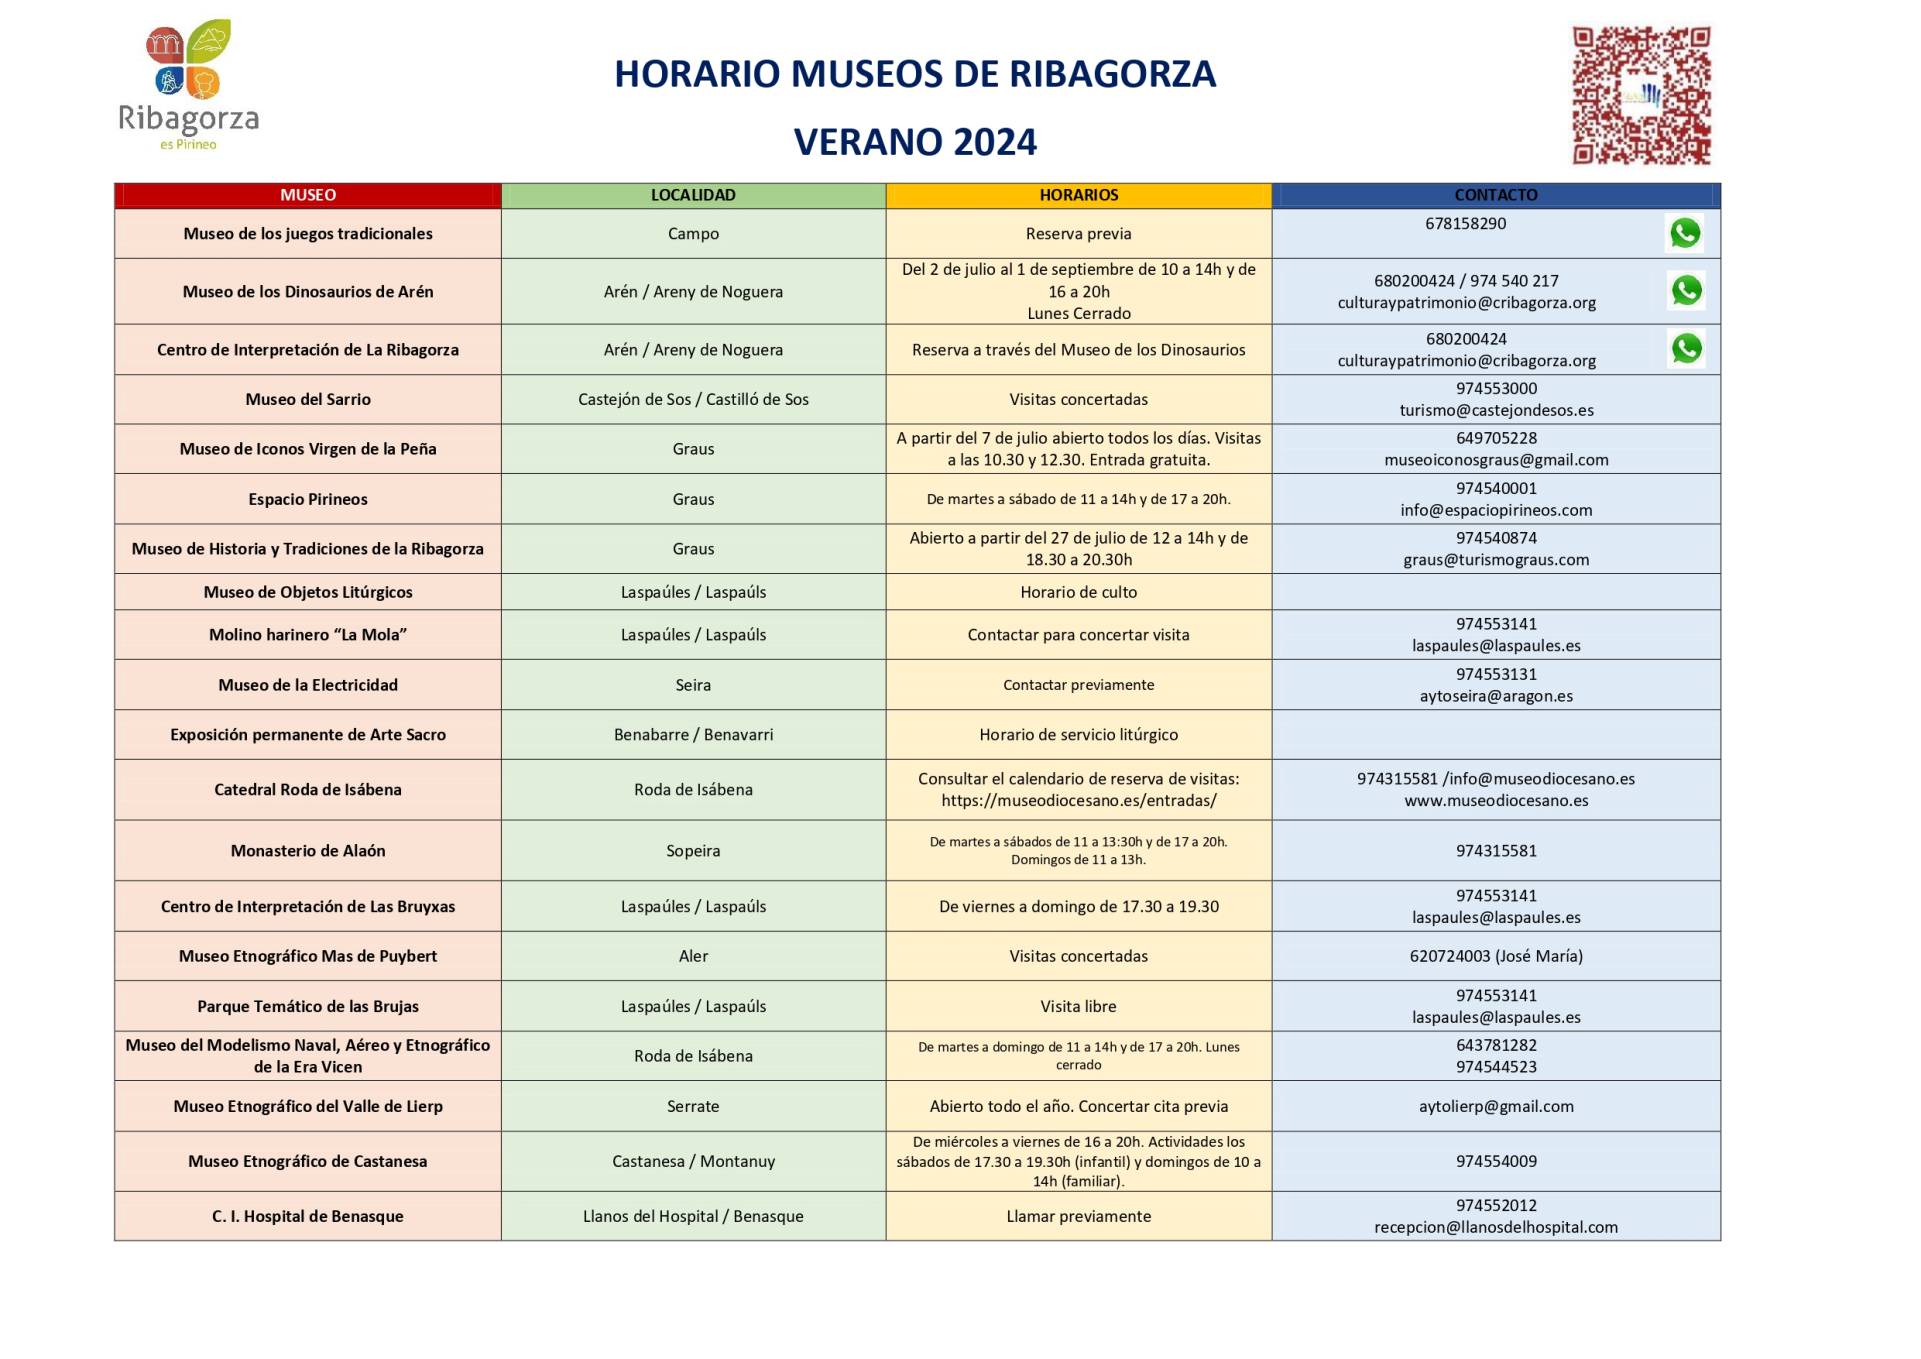 HORARIO DE LOS MUSEOS DE RIBAGORZA. VERANO 2024